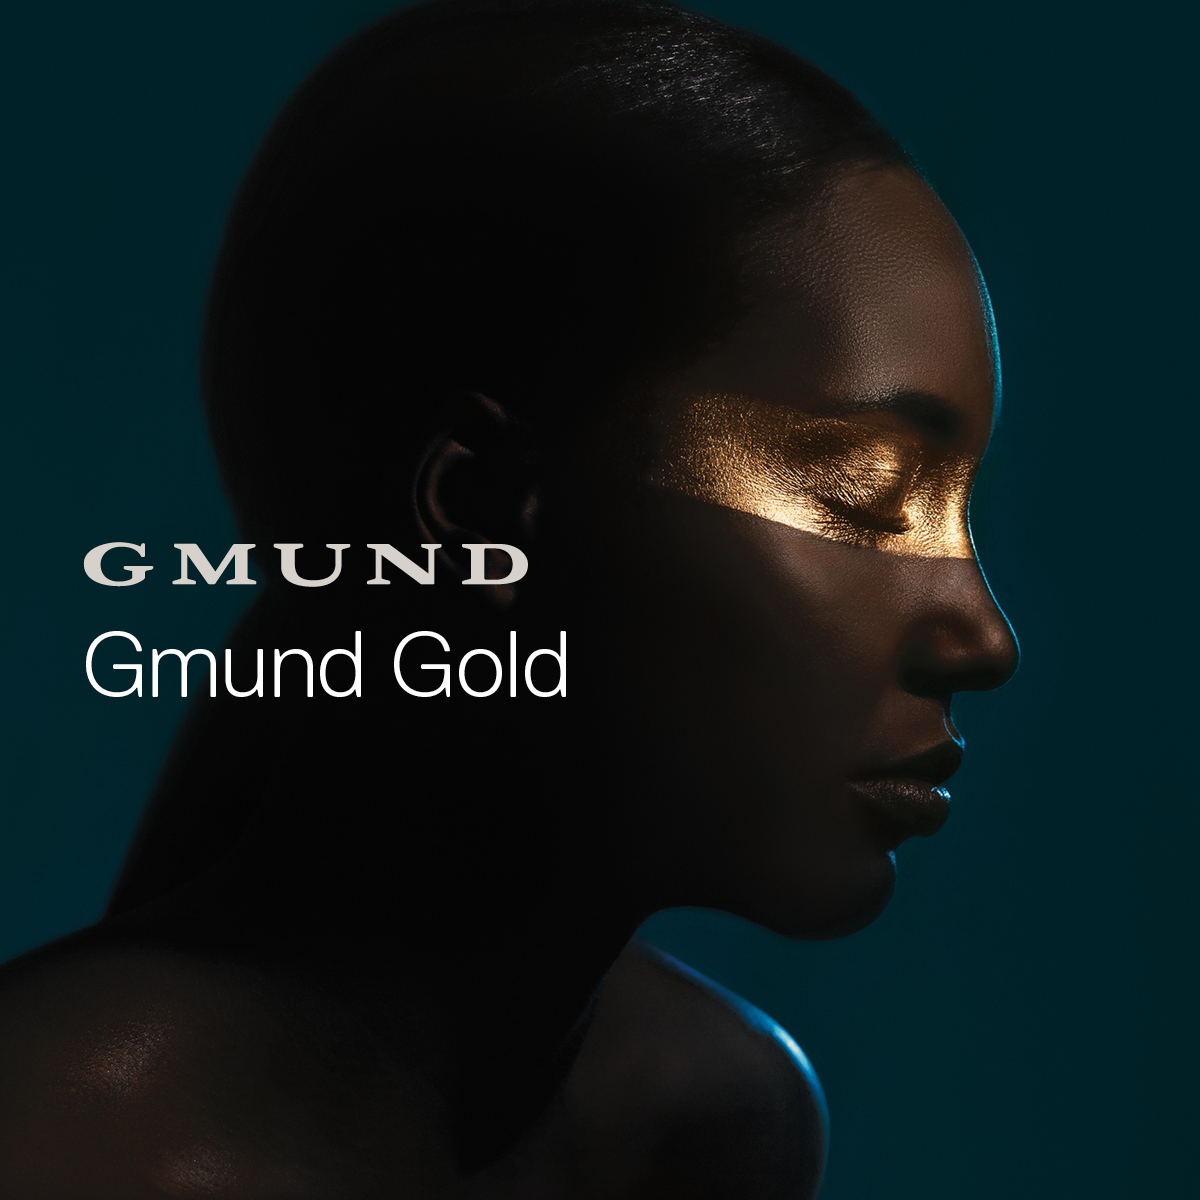 Gmund Gold - Compendium Gmund Gold